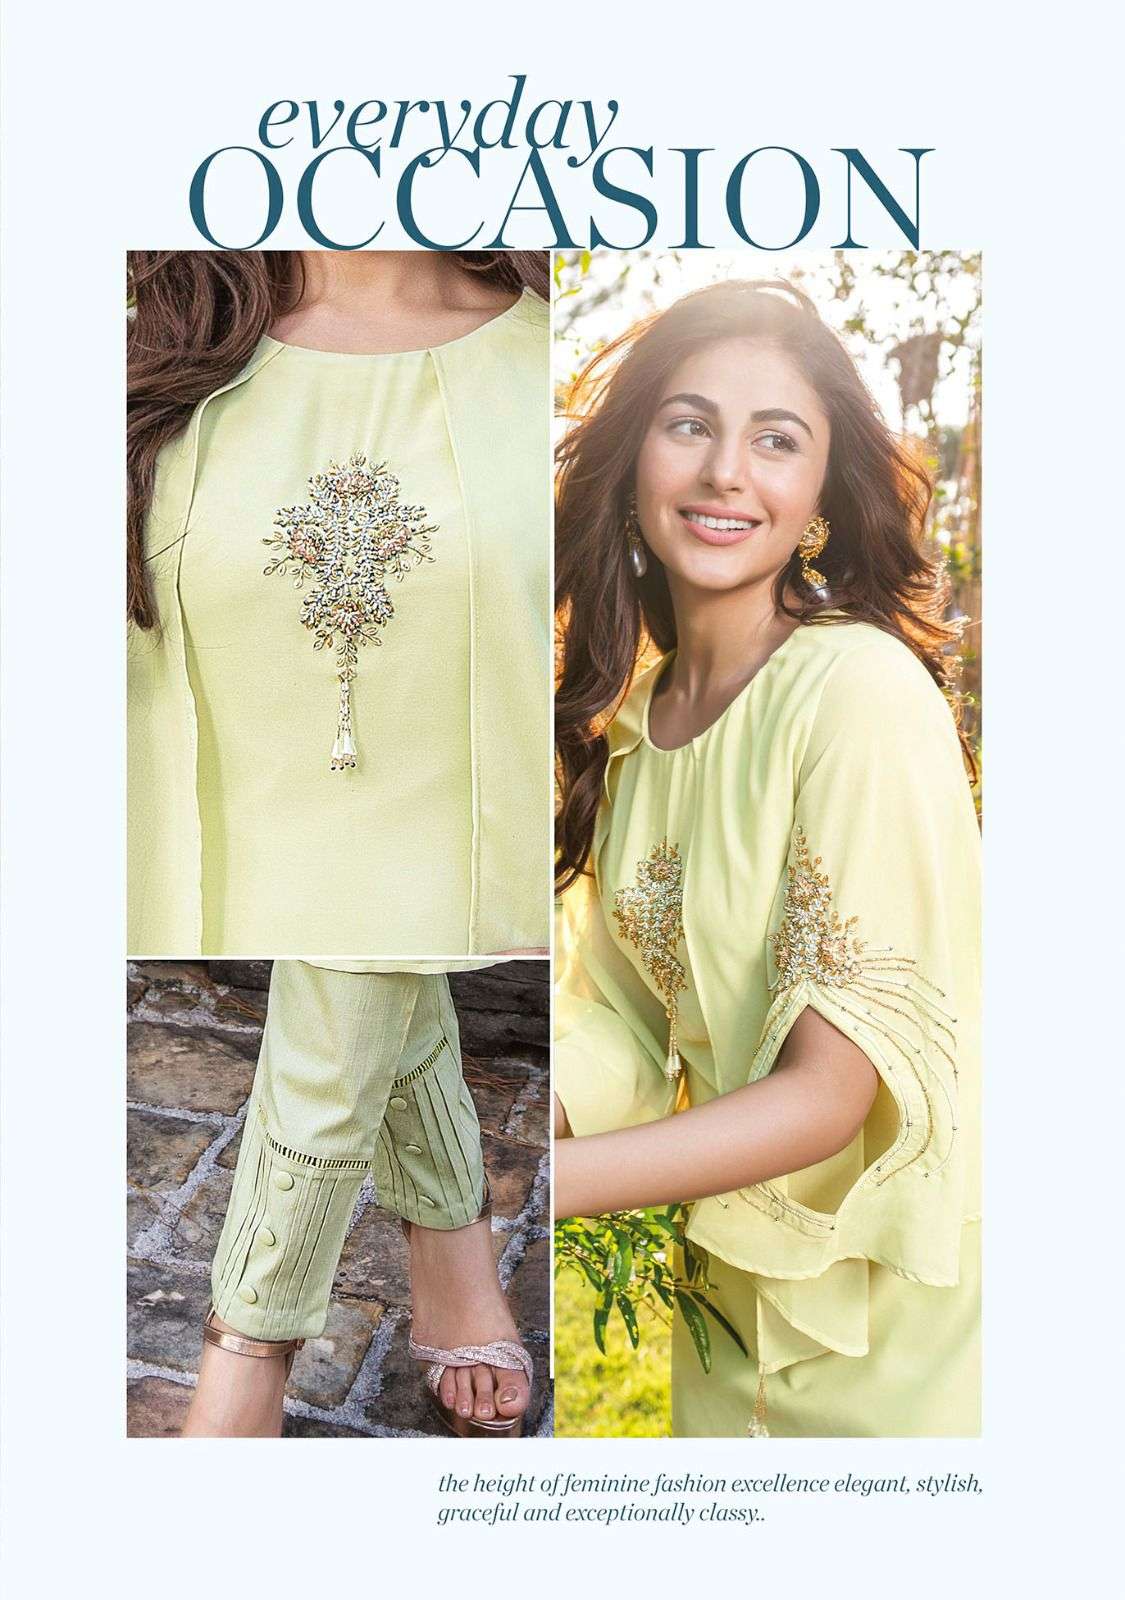 anju fabrics purity 2991-2996 series stylish designer kurtis catalogue wholesaler surat 